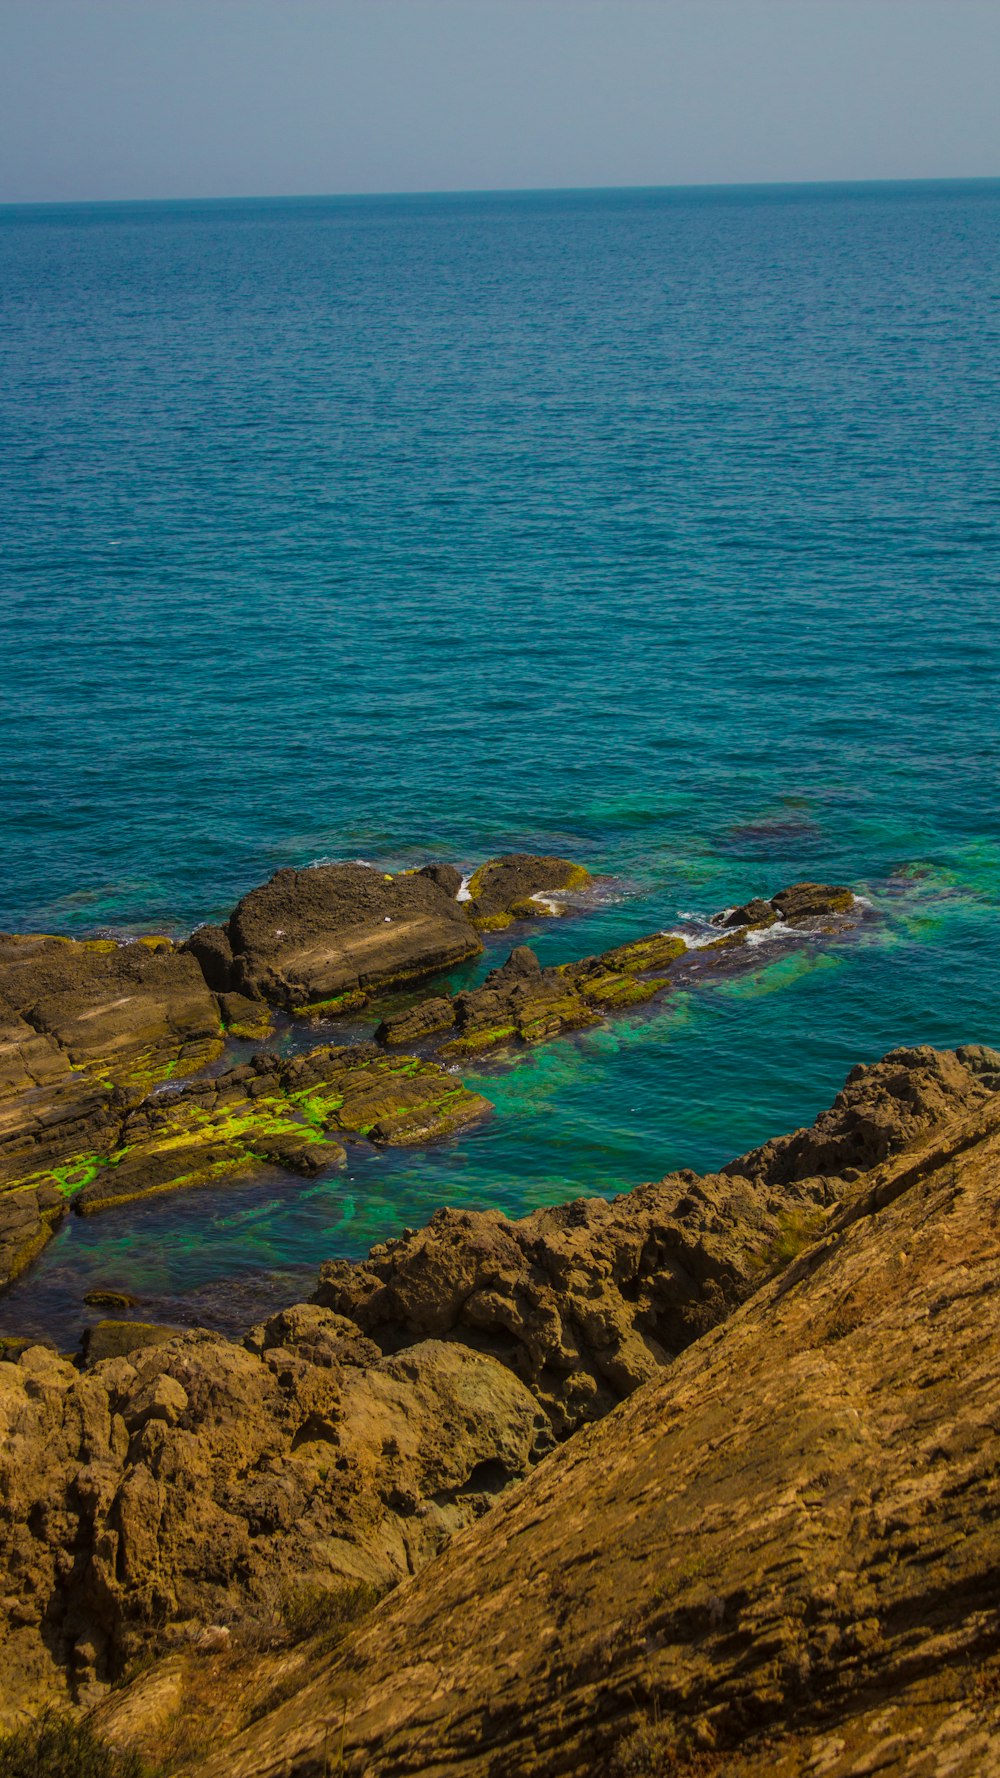 formazione rocciosa verde e marrone accanto al mare blu durante il giorno